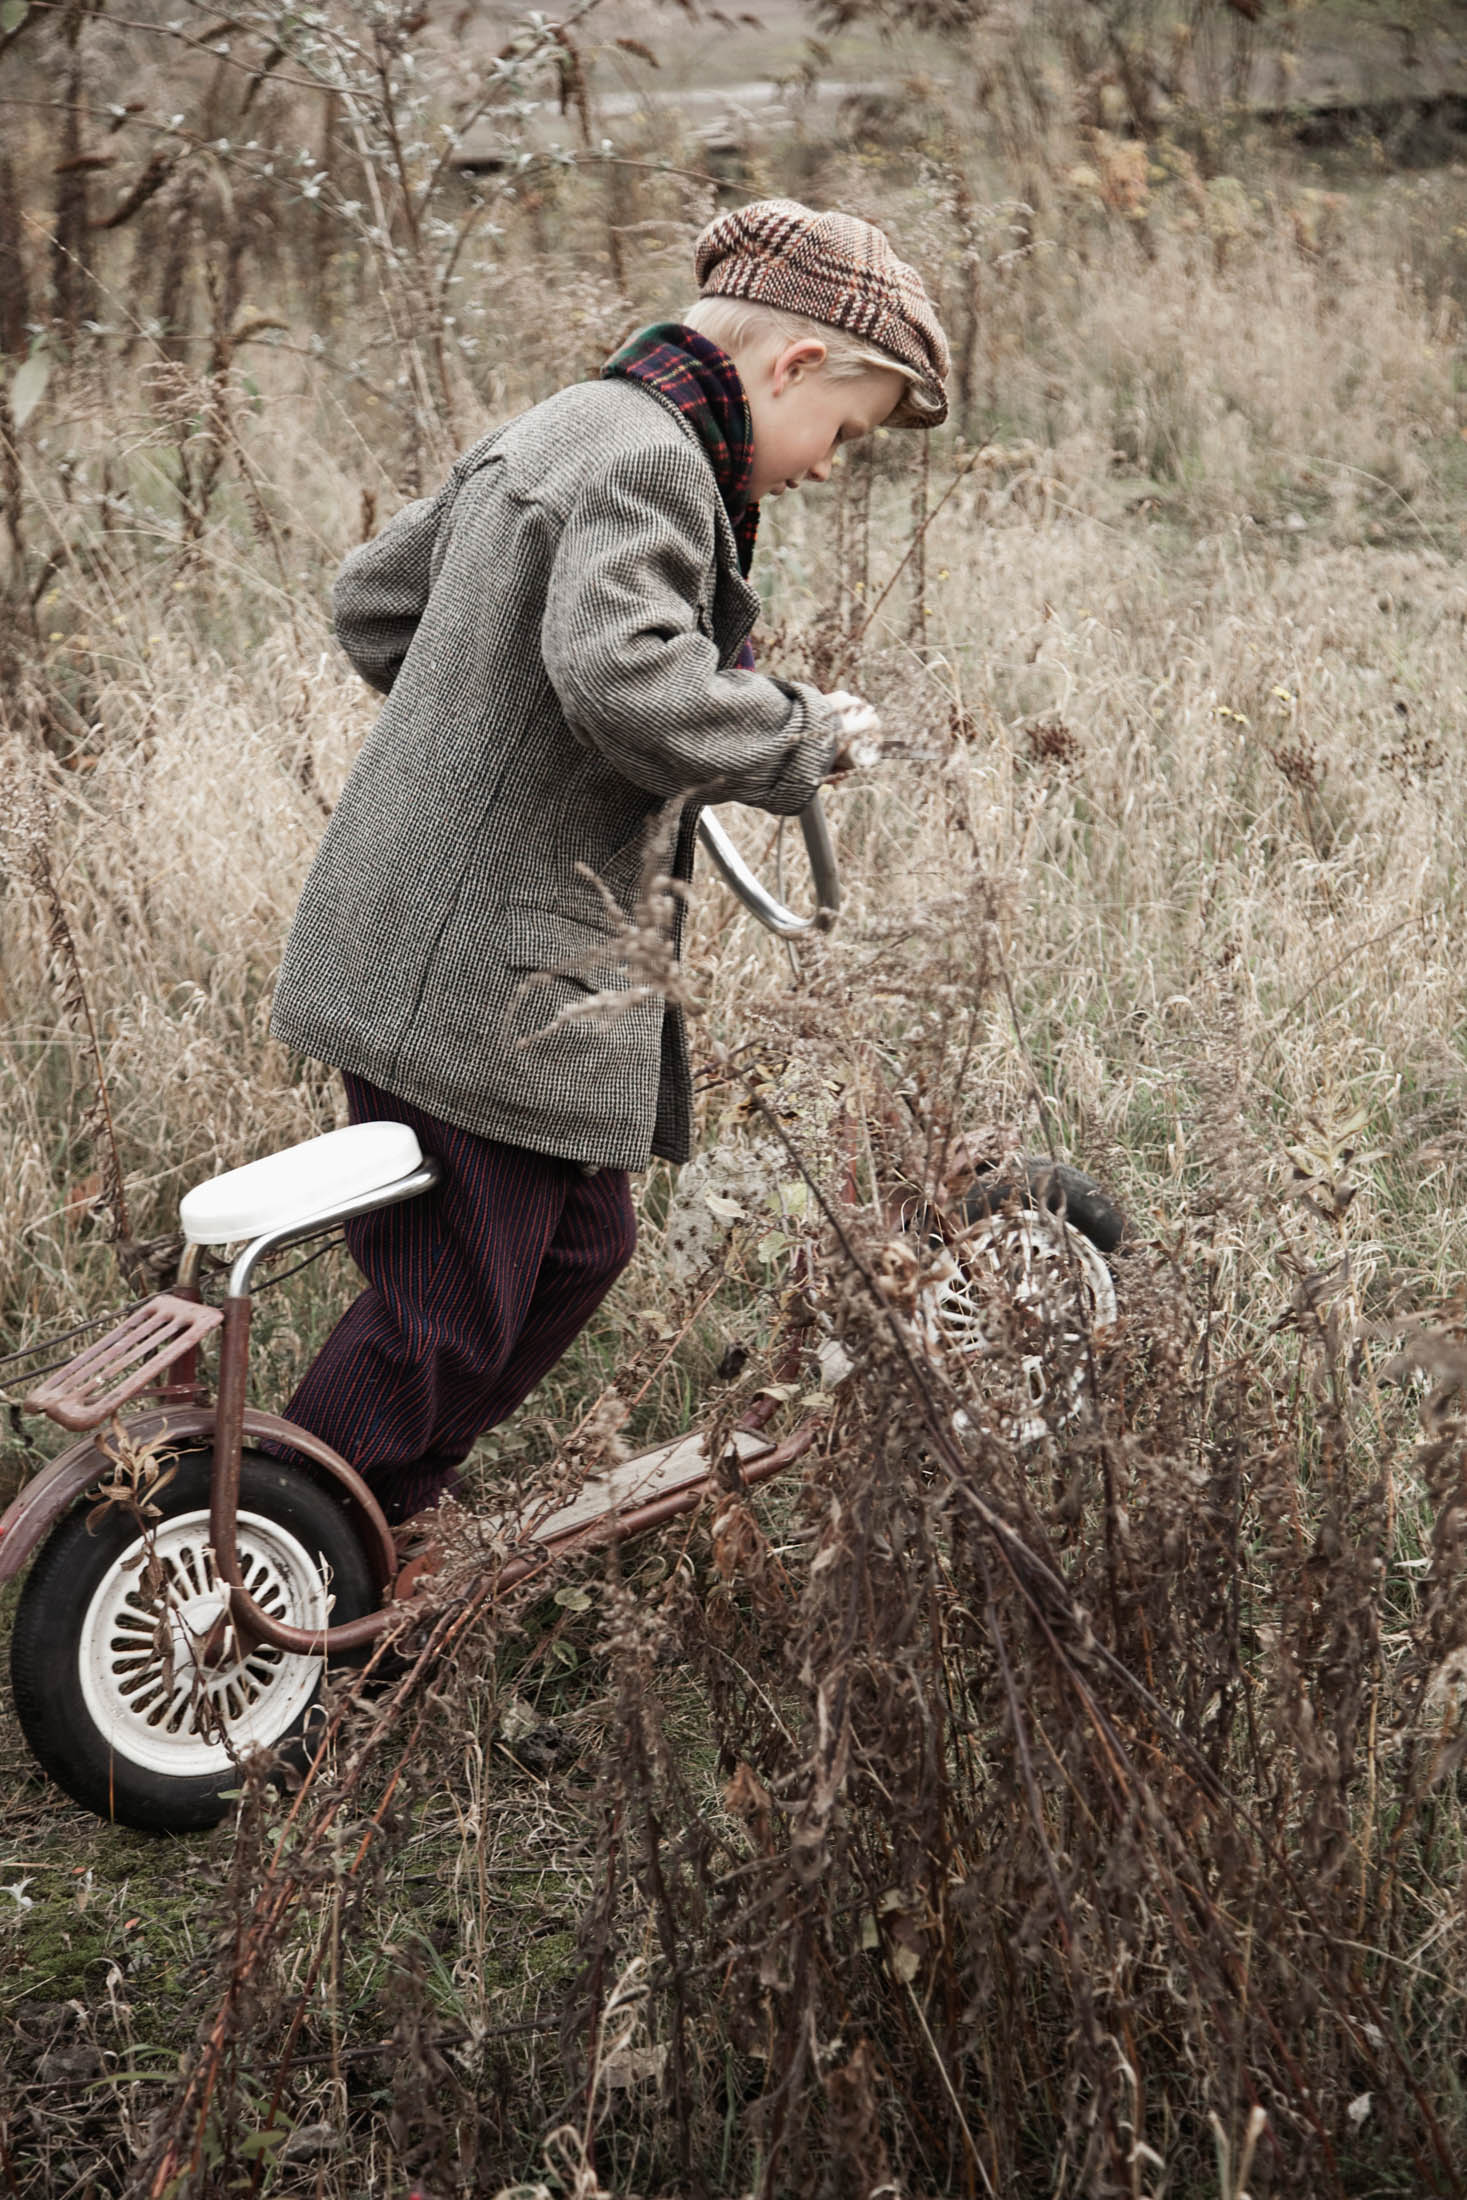 Ein kleiner Junge in Vintage-Kleidung, darunter Tweedmütze und Unterhosen, balanciert auf einem klassischen Dreirad neben überwucherten Büschen auf einem Feld und scheint etwas auf dem Boden zu untersuchen. © Fotografie Tomas Rodriguez